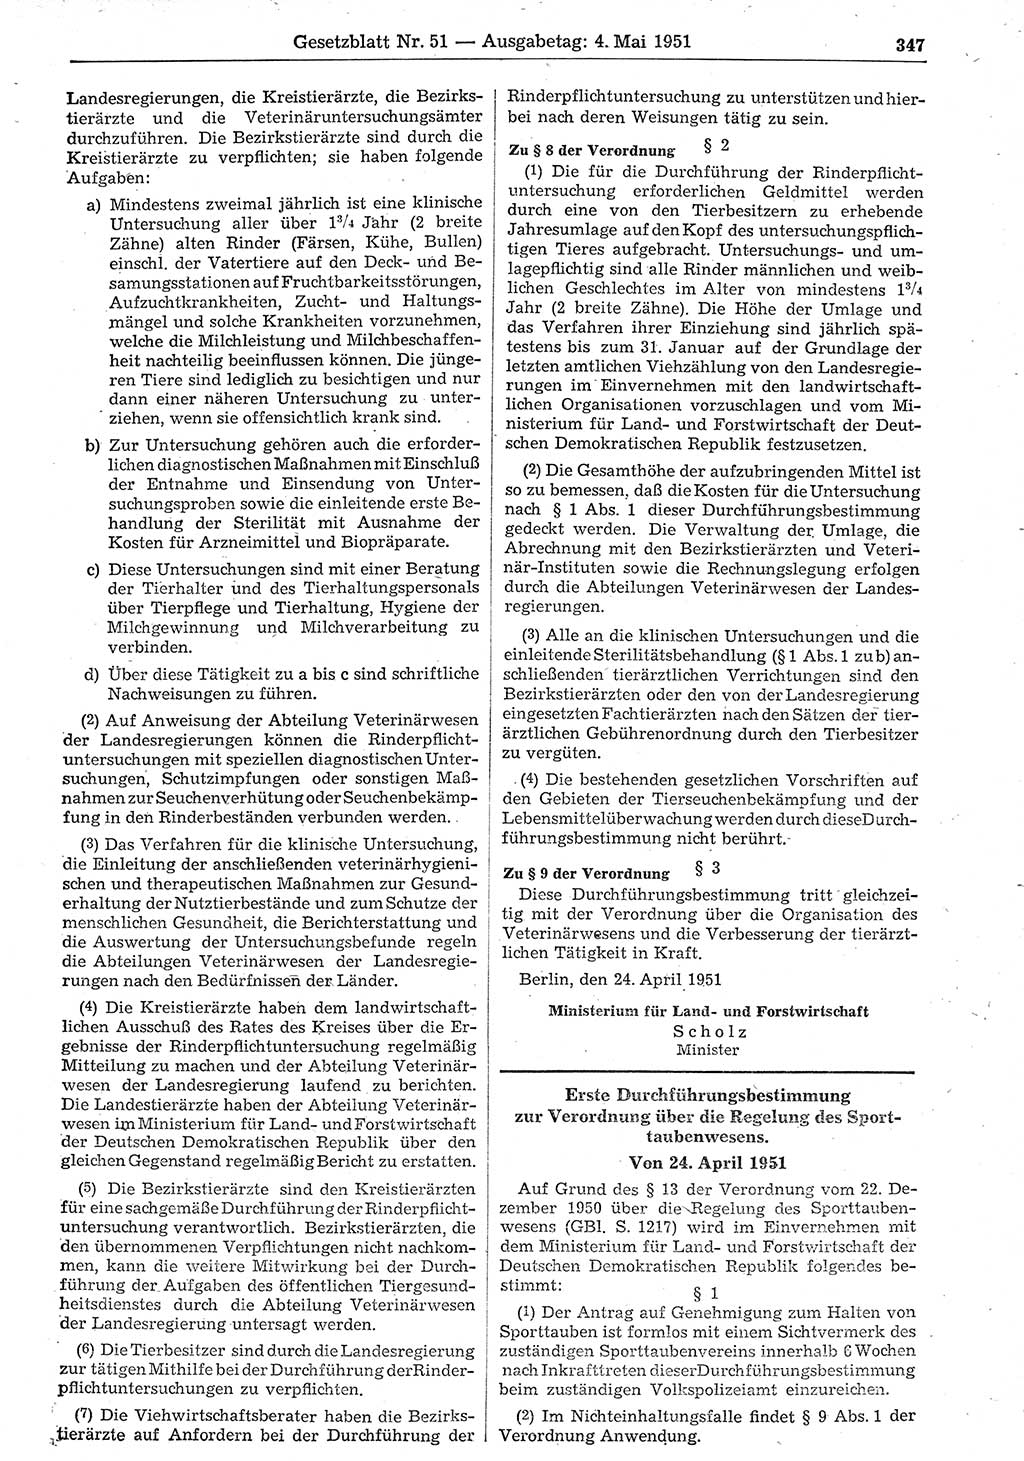 Gesetzblatt (GBl.) der Deutschen Demokratischen Republik (DDR) 1951, Seite 347 (GBl. DDR 1951, S. 347)